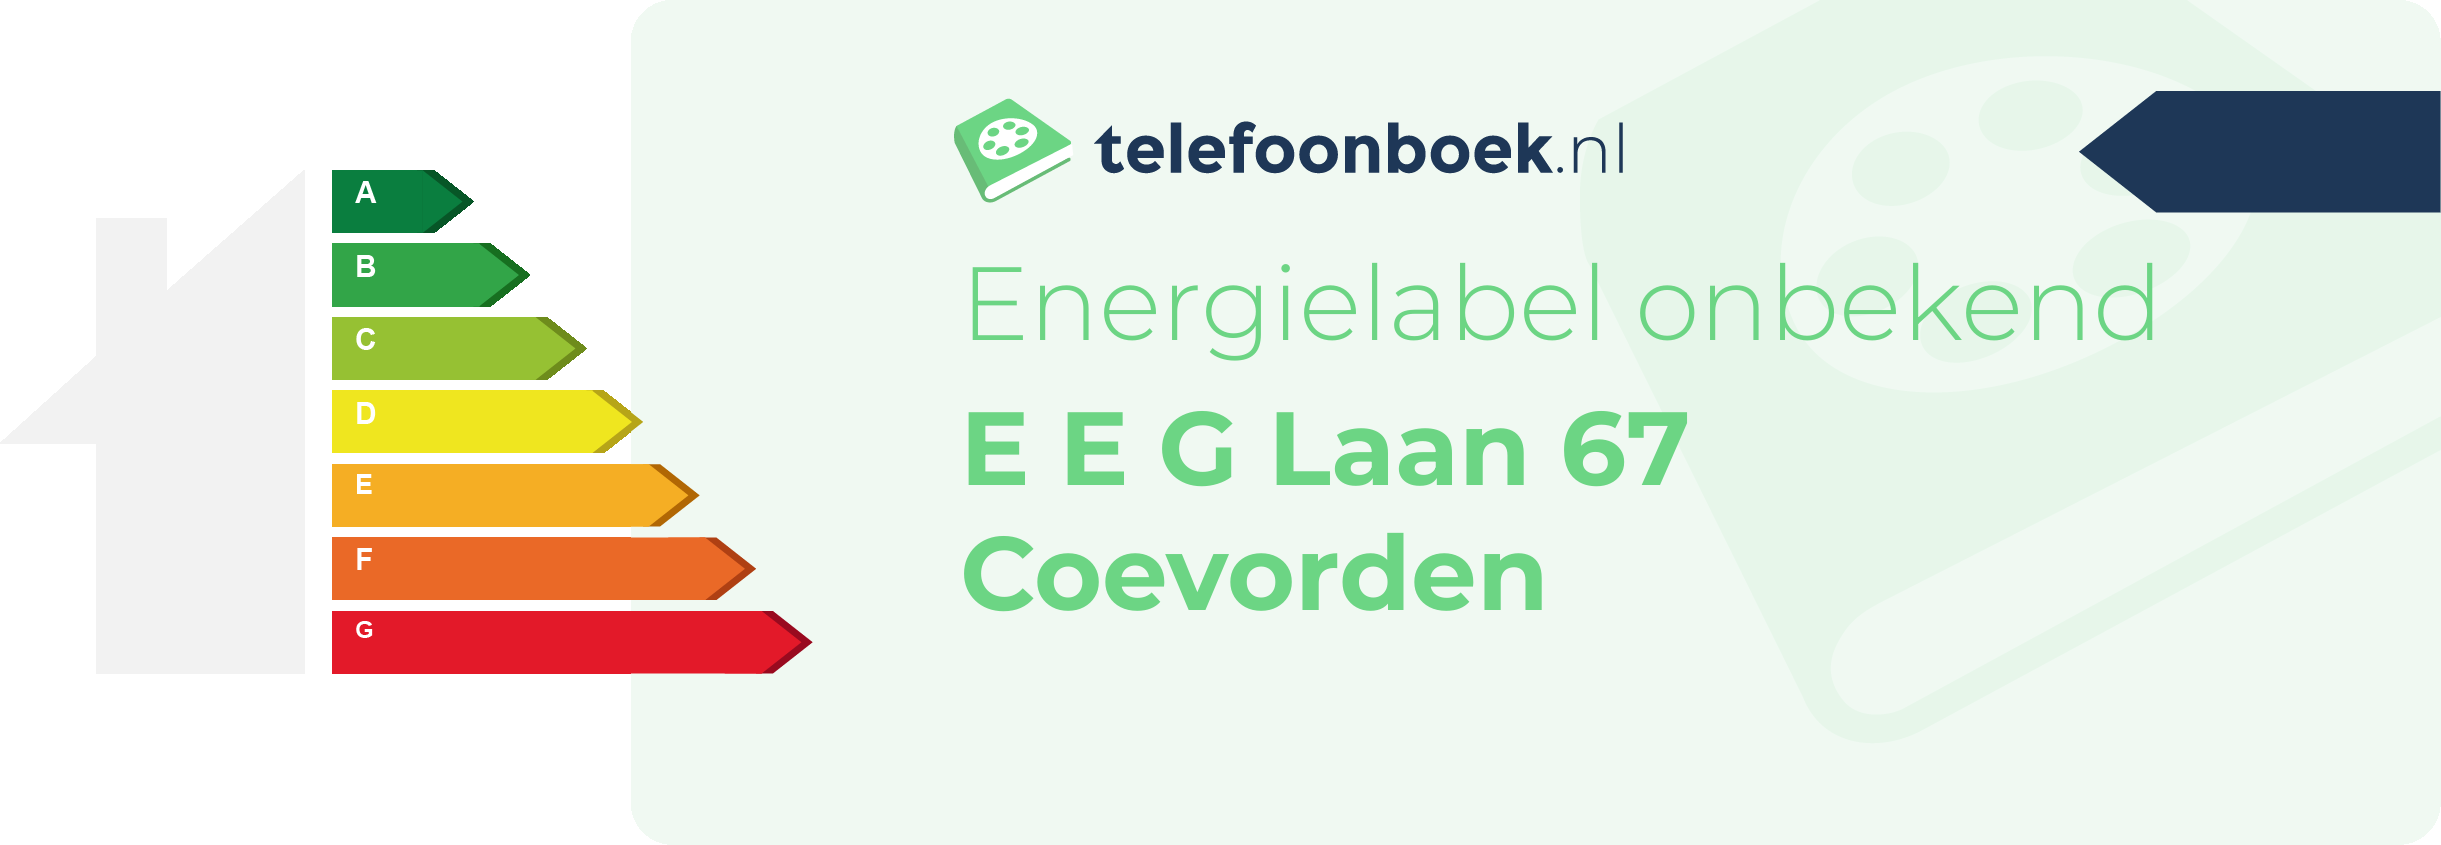 Energielabel E E G Laan 67 Coevorden